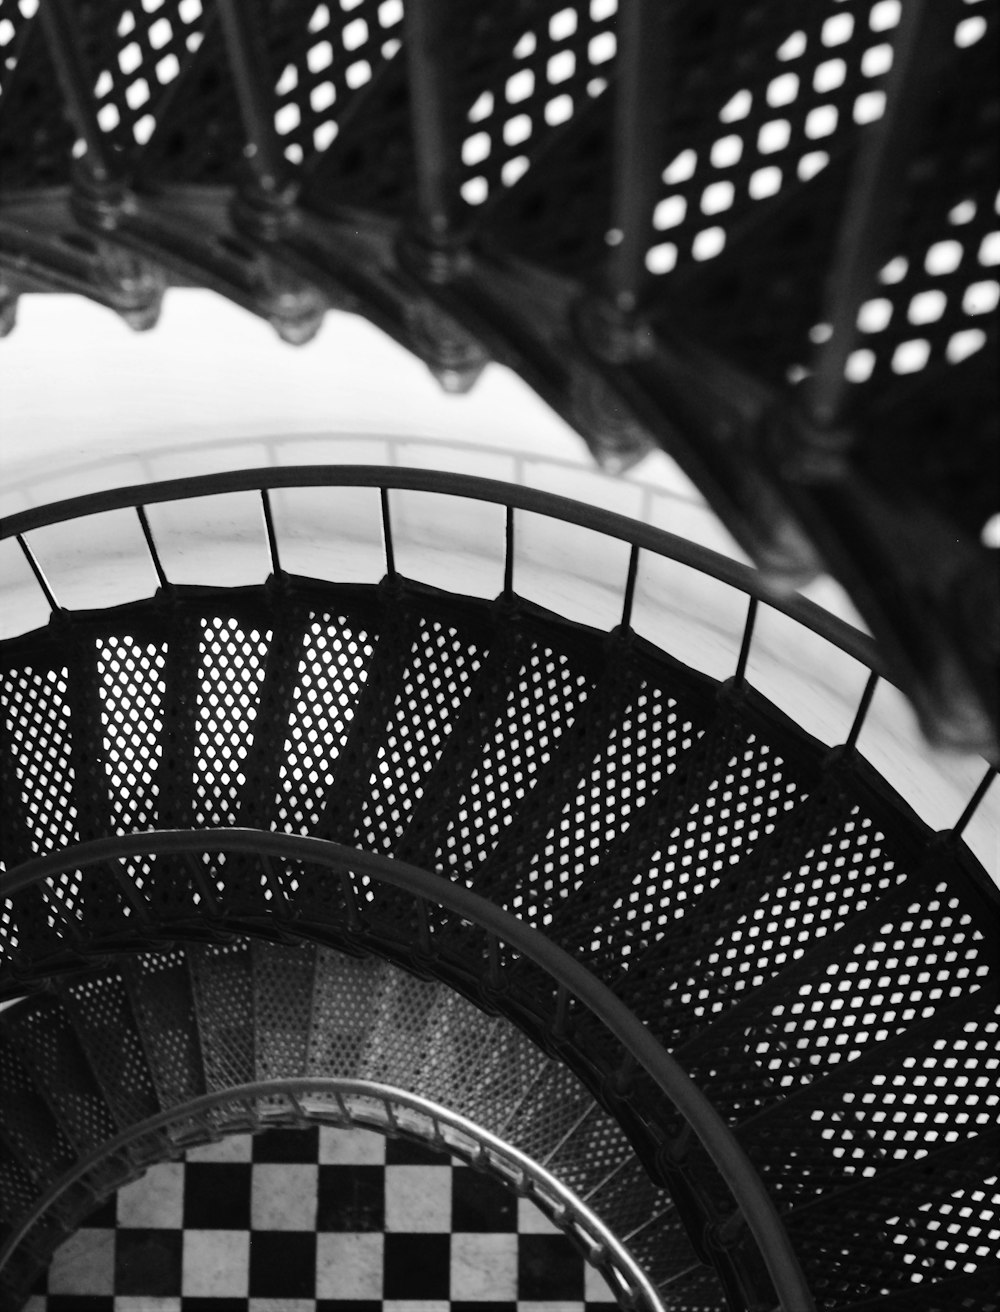 グレースケール写真の黒い金属製の螺旋階段